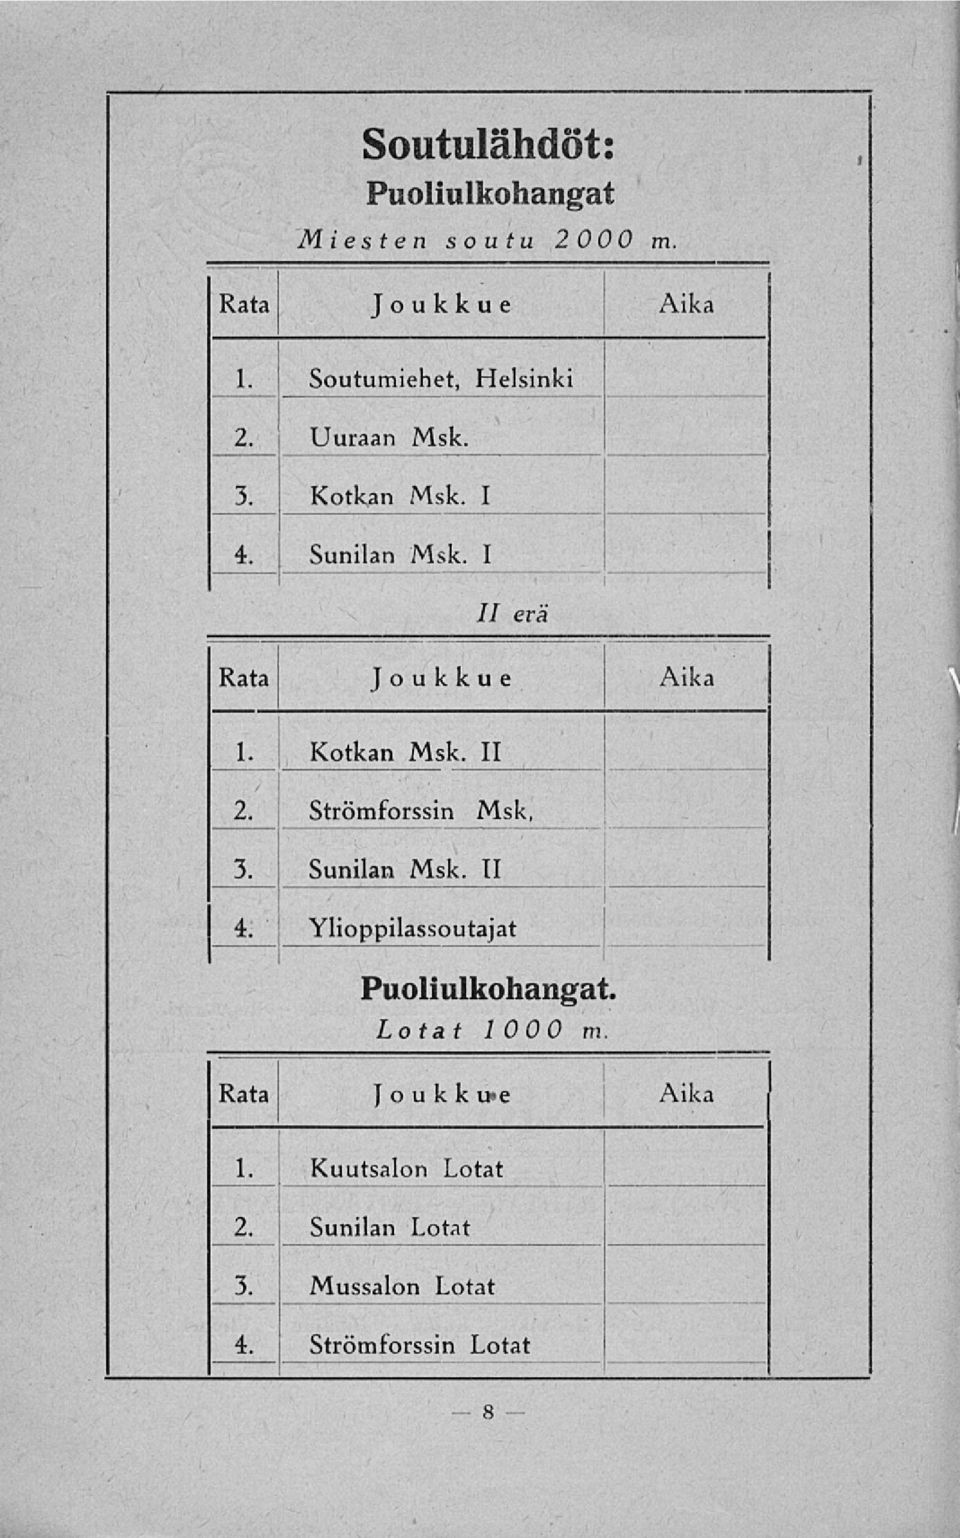 I // era Rata Joukkue Aika 1. Kotkan Msk. II 2. Strömforssin Msk, 3. Sunilan Msk. II 4.